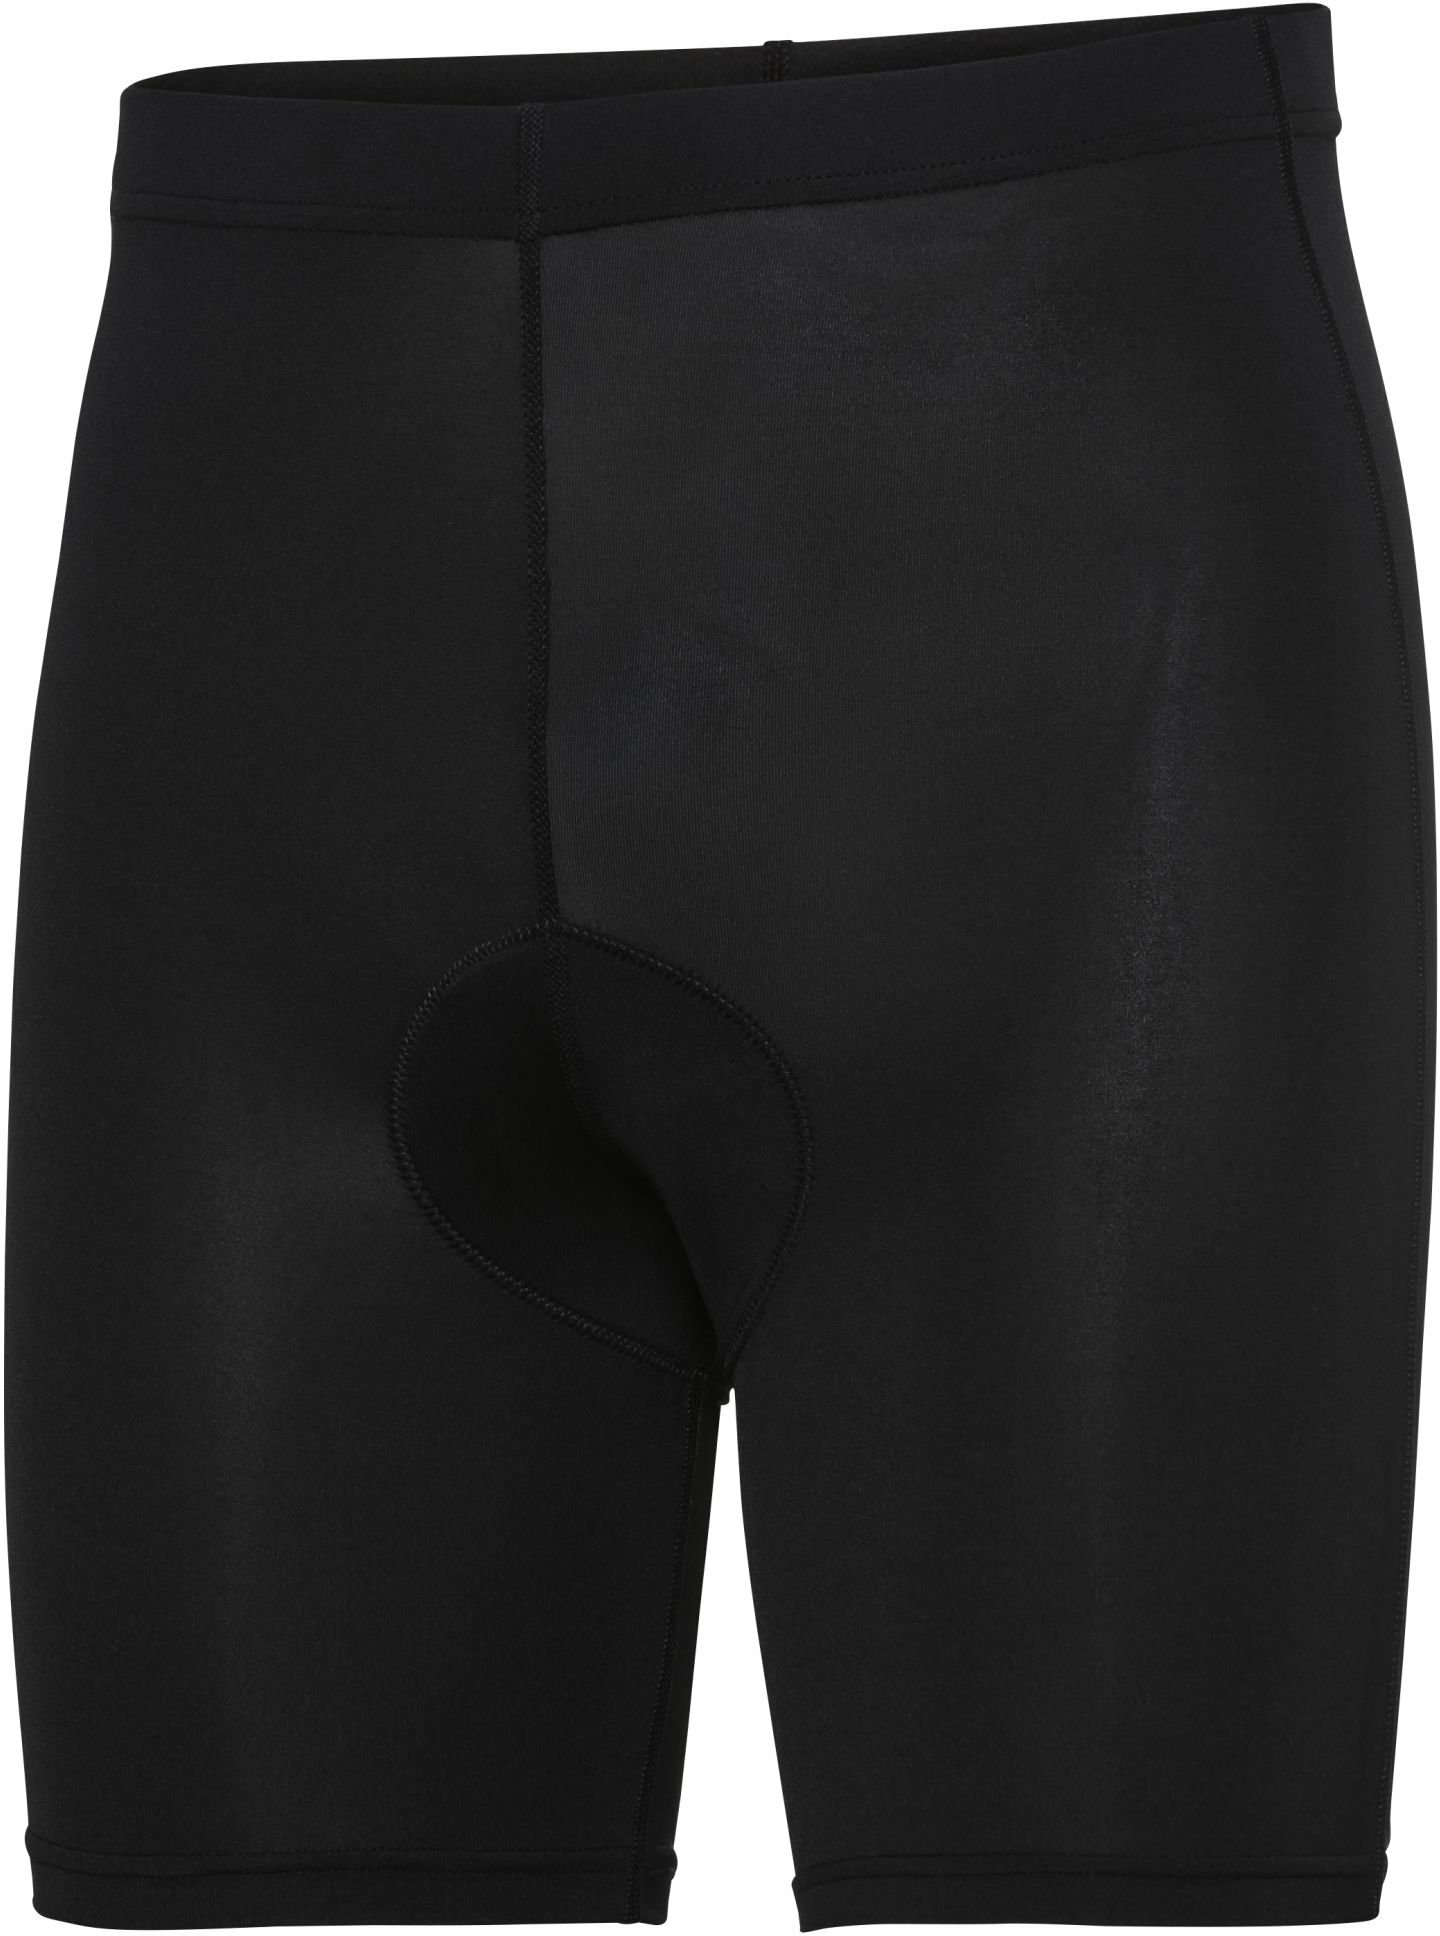 Bekleidung/Unterwäsche: Apura  Herren Unterhose Baselayer Shorts Pure 4XL 